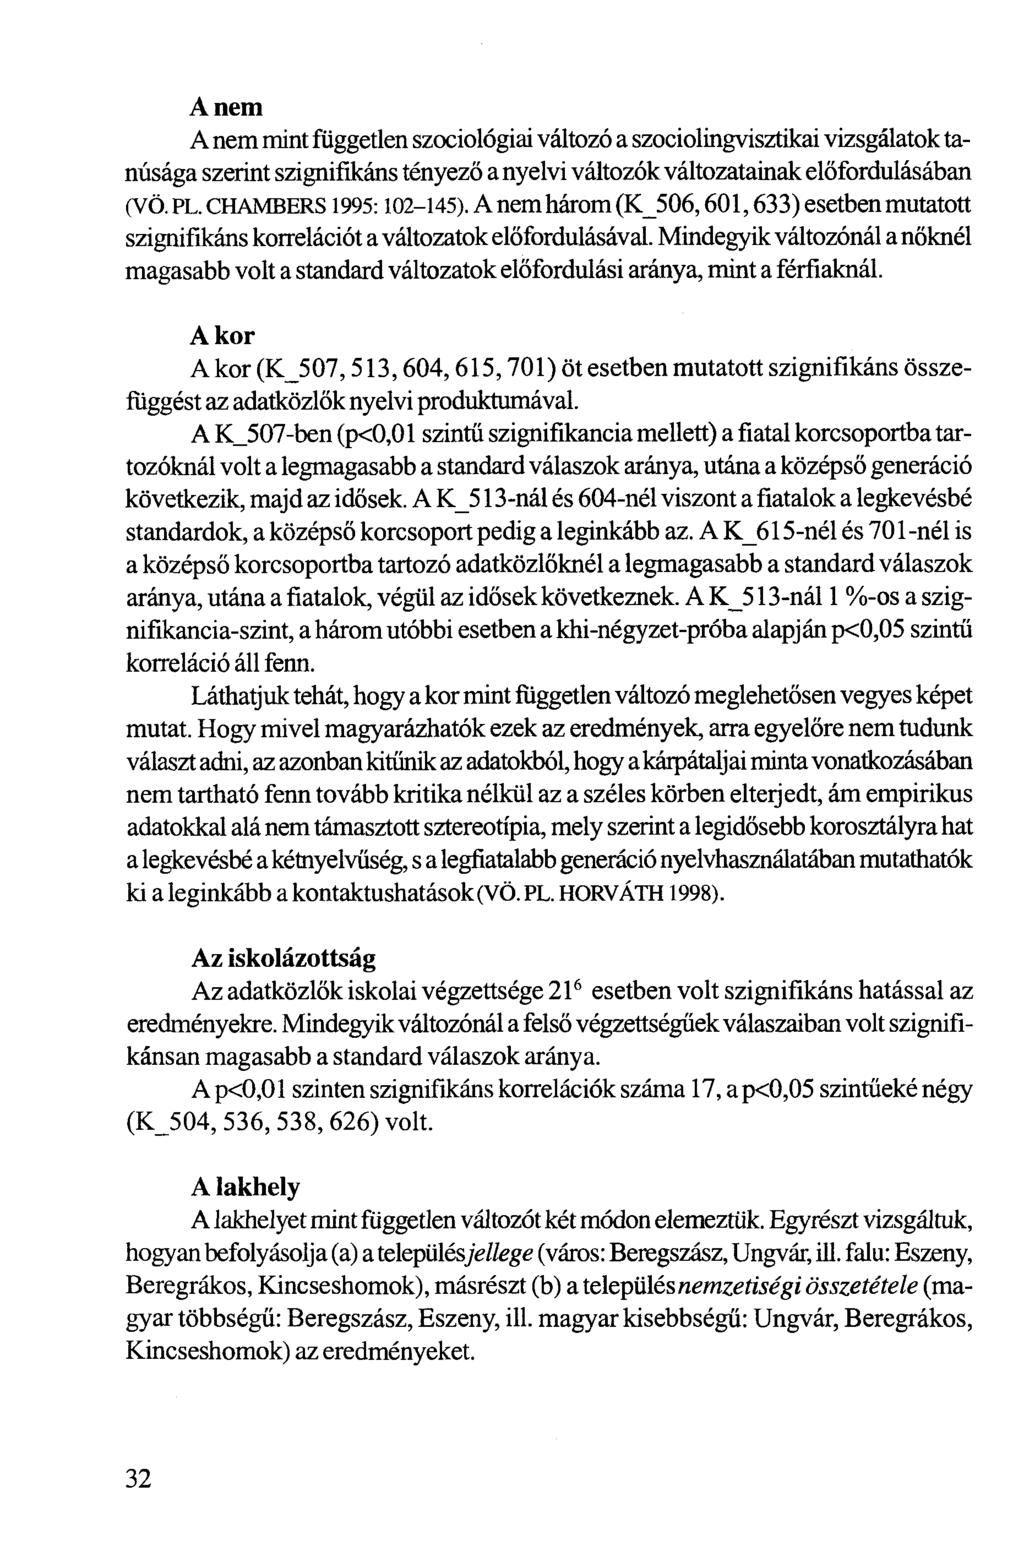 A nem A nem mint független szociológiai változó a szociolingvisztikai vizsgálatok tanúsága szerint szignifikáns tényező a nyelvi változók változatainak előfordulásában (VÖ. PL. CHAMBERS1995:102-145).